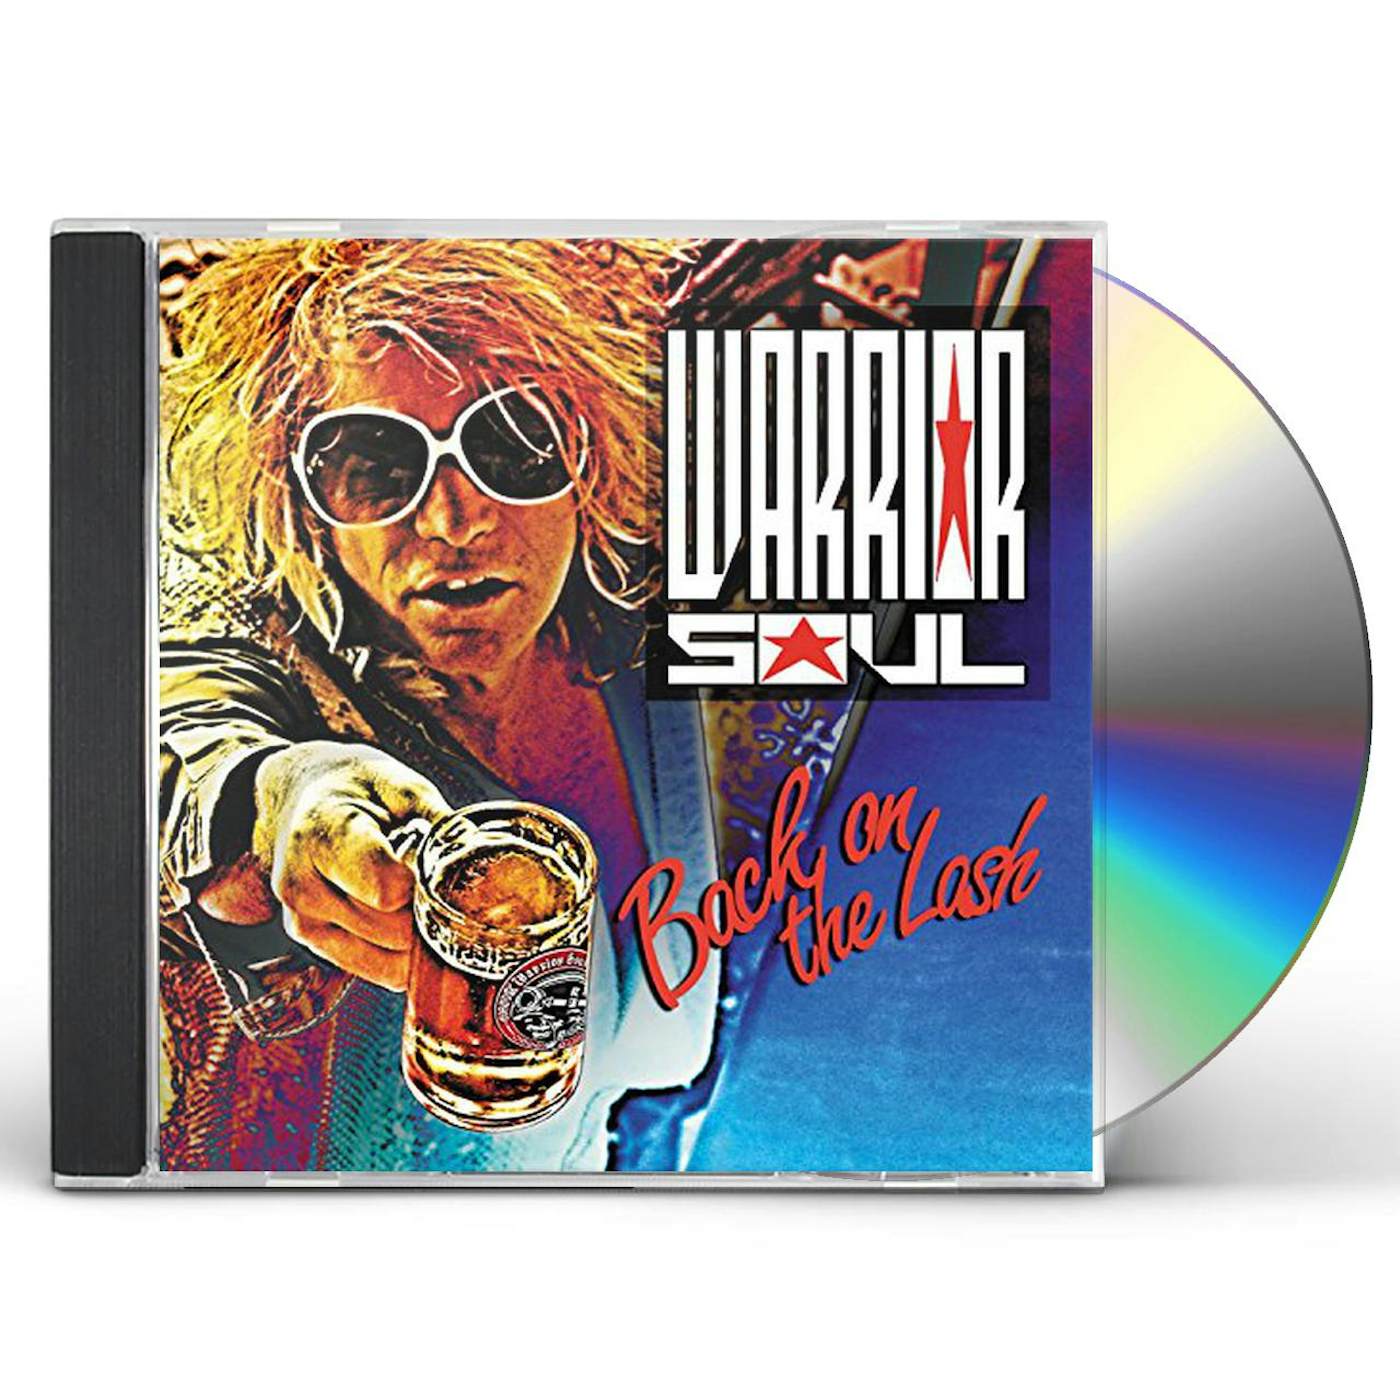 Warrior Soul BACK ON THE LASH CD